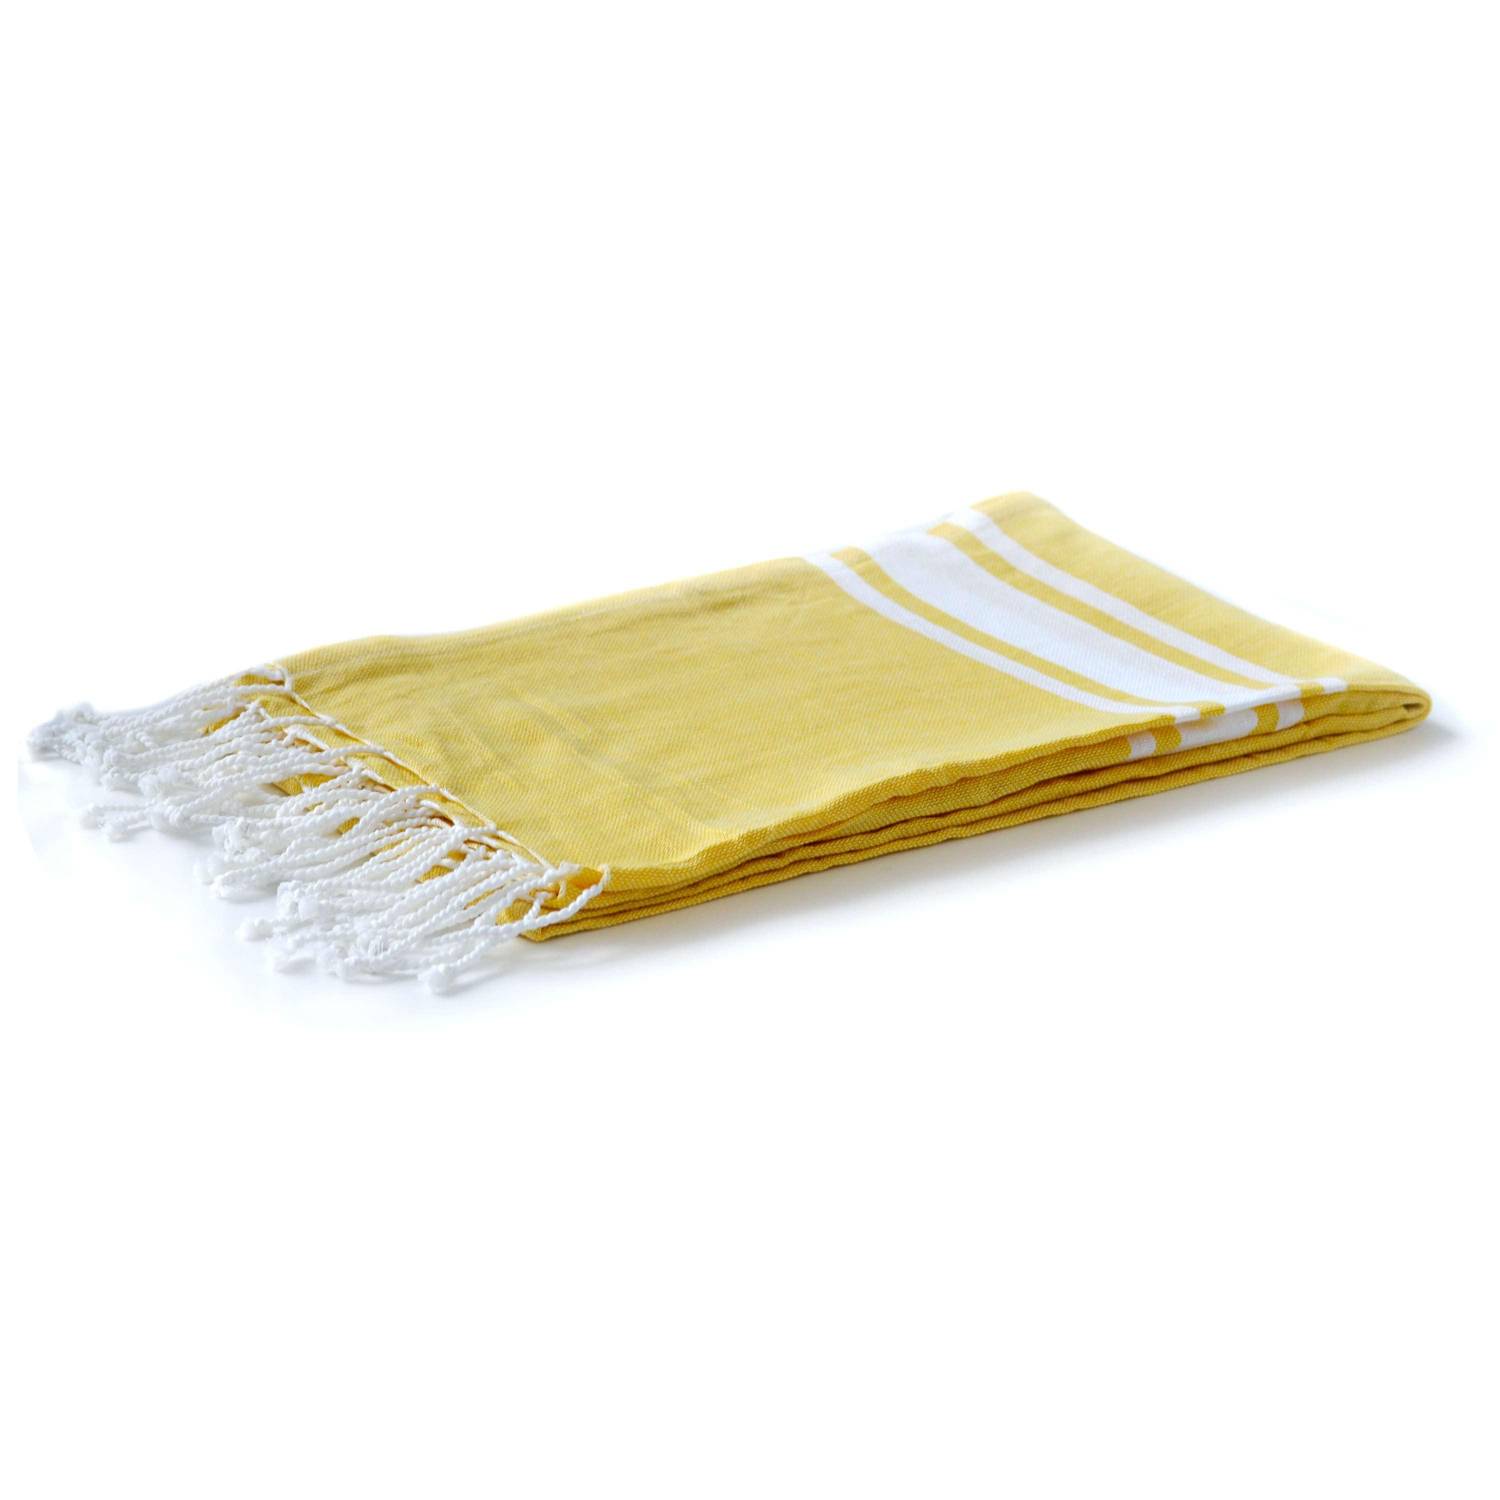 Fouta - 190x100cm - Gelb, Handtuch aus Tunesien, 100% Baumwolle, Plaid, Strandtuch Photo2